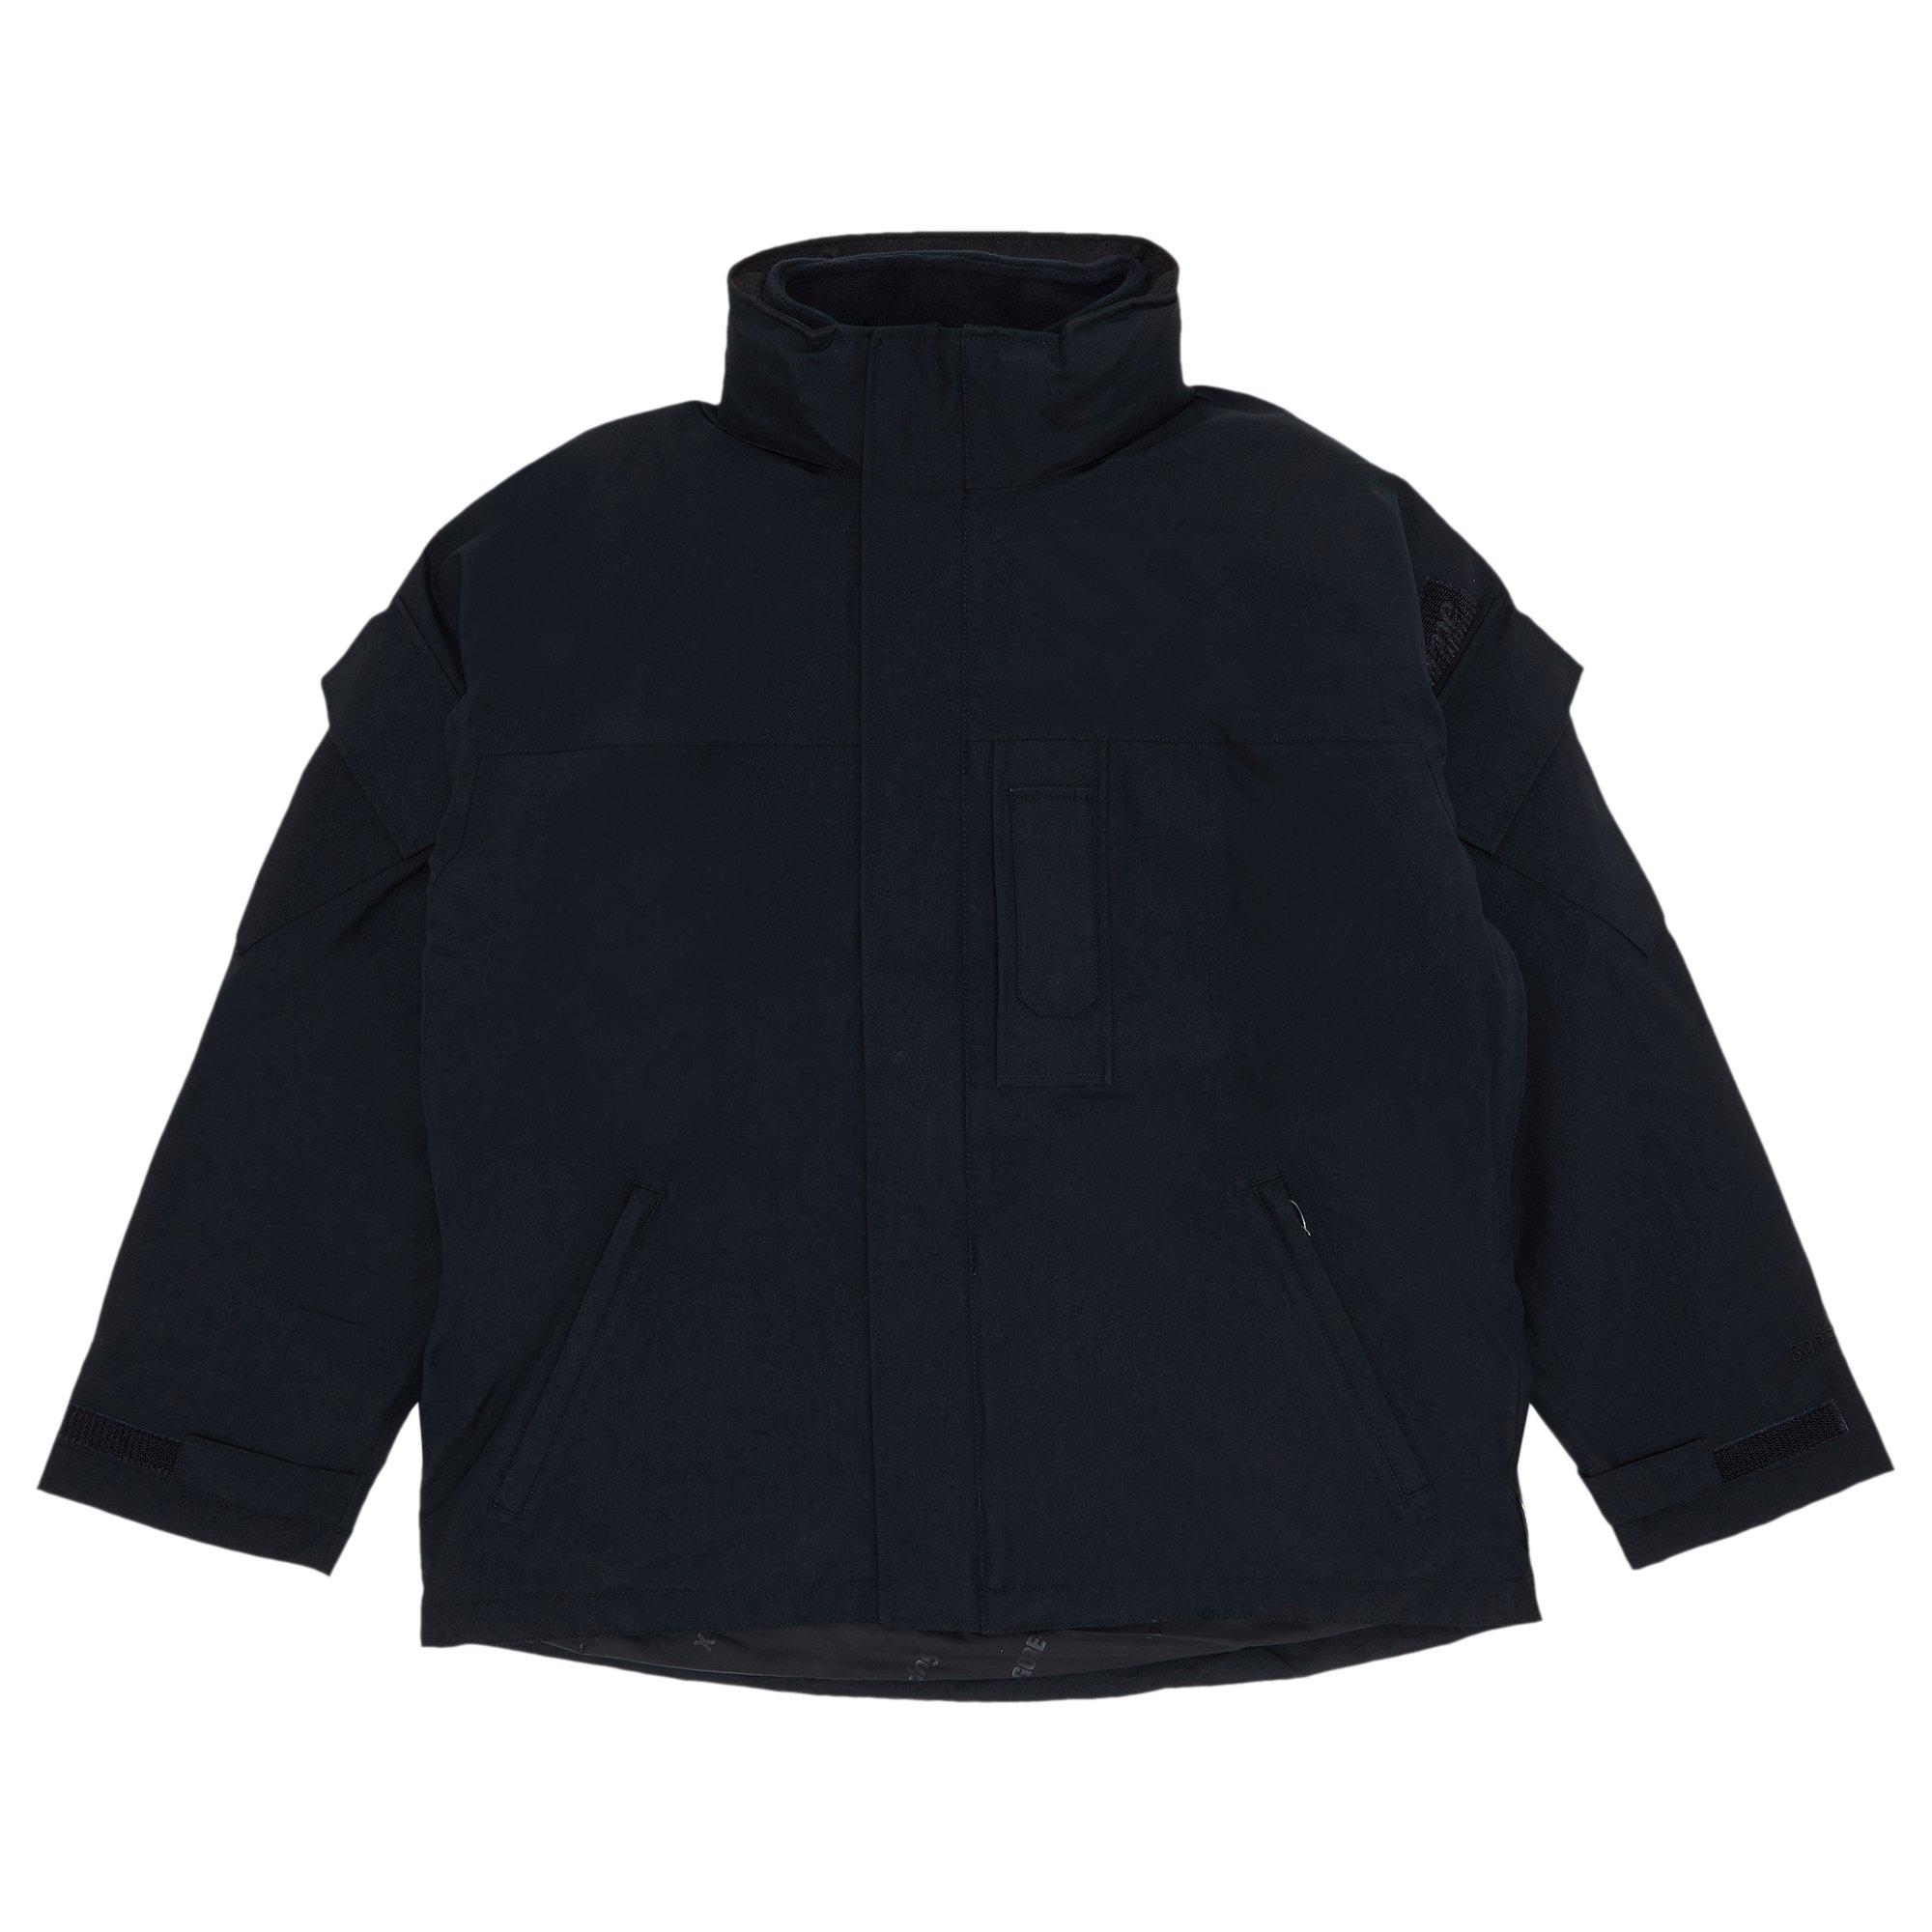 Buy Supreme 2 In GORE TEX Polartec Liner Jacket 'Black